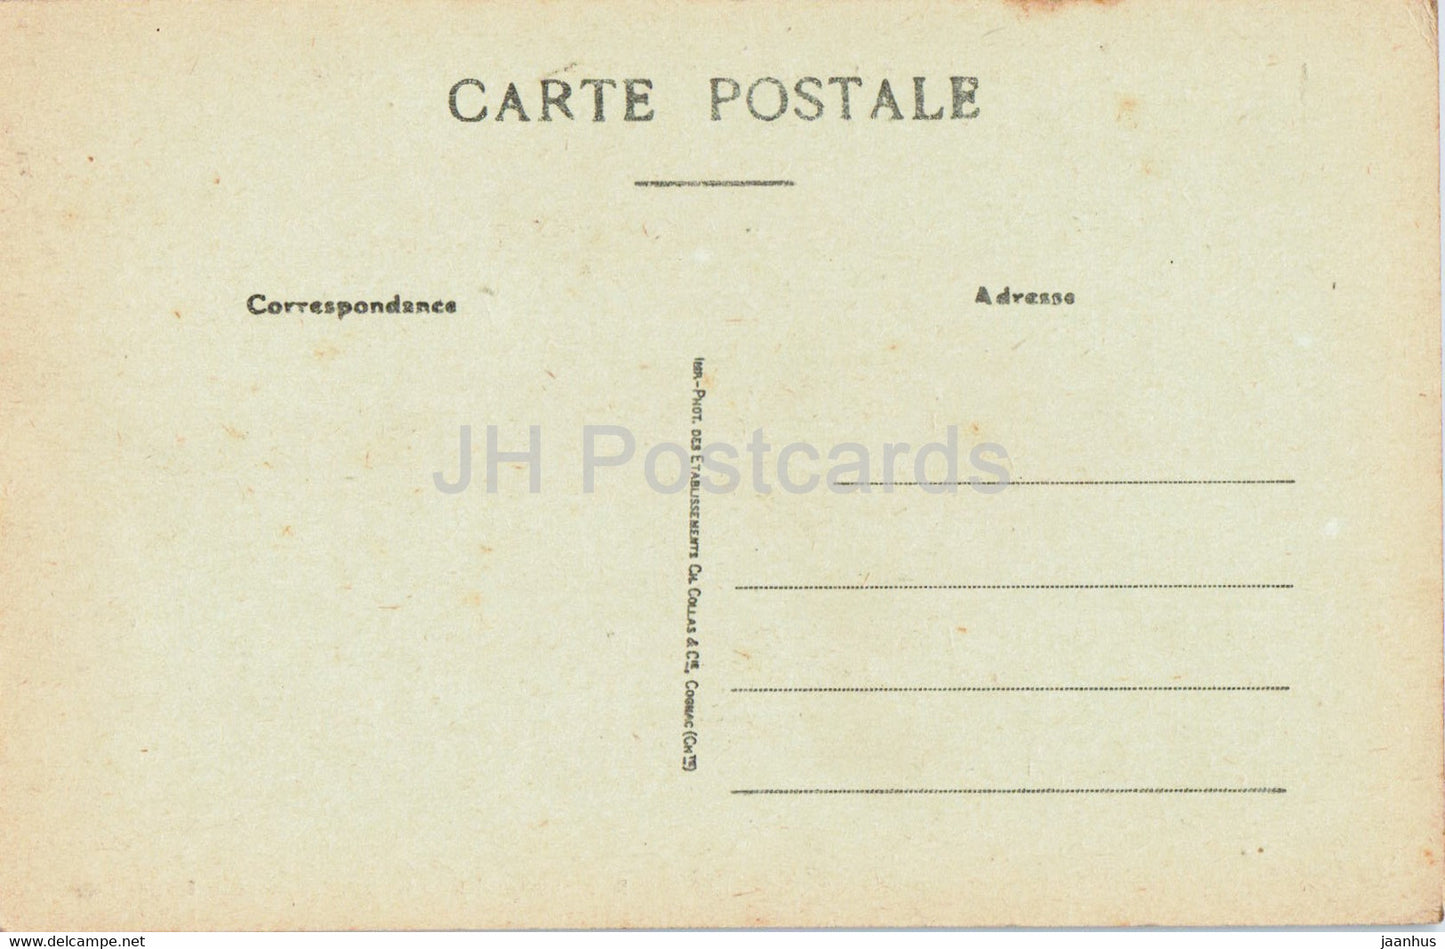 Ancienne place forte de Brouage - Porte royale - 90 - old postcard - France - unused